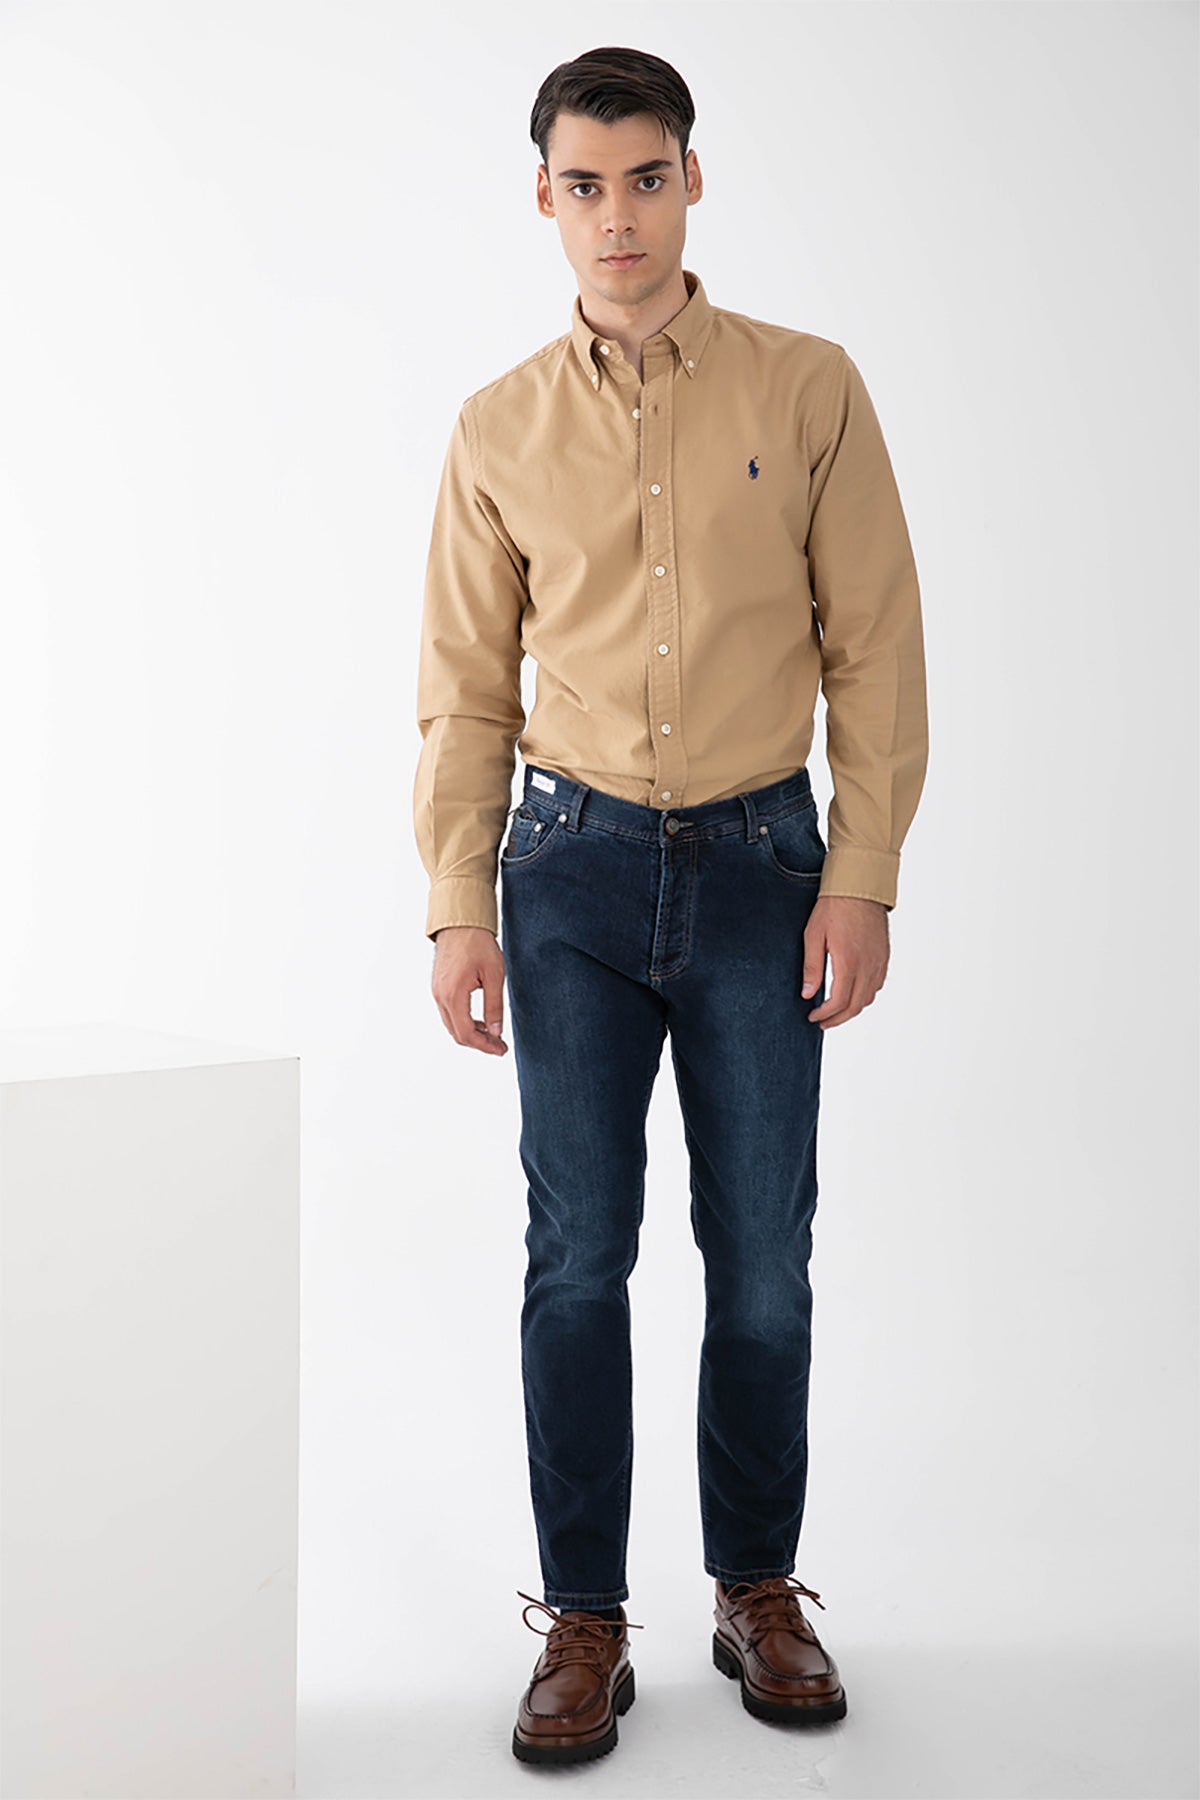 Richard J. Brown Hanoi Yüksek Bel Slim Regular Fit Jeans-Libas Trendy Fashion Store